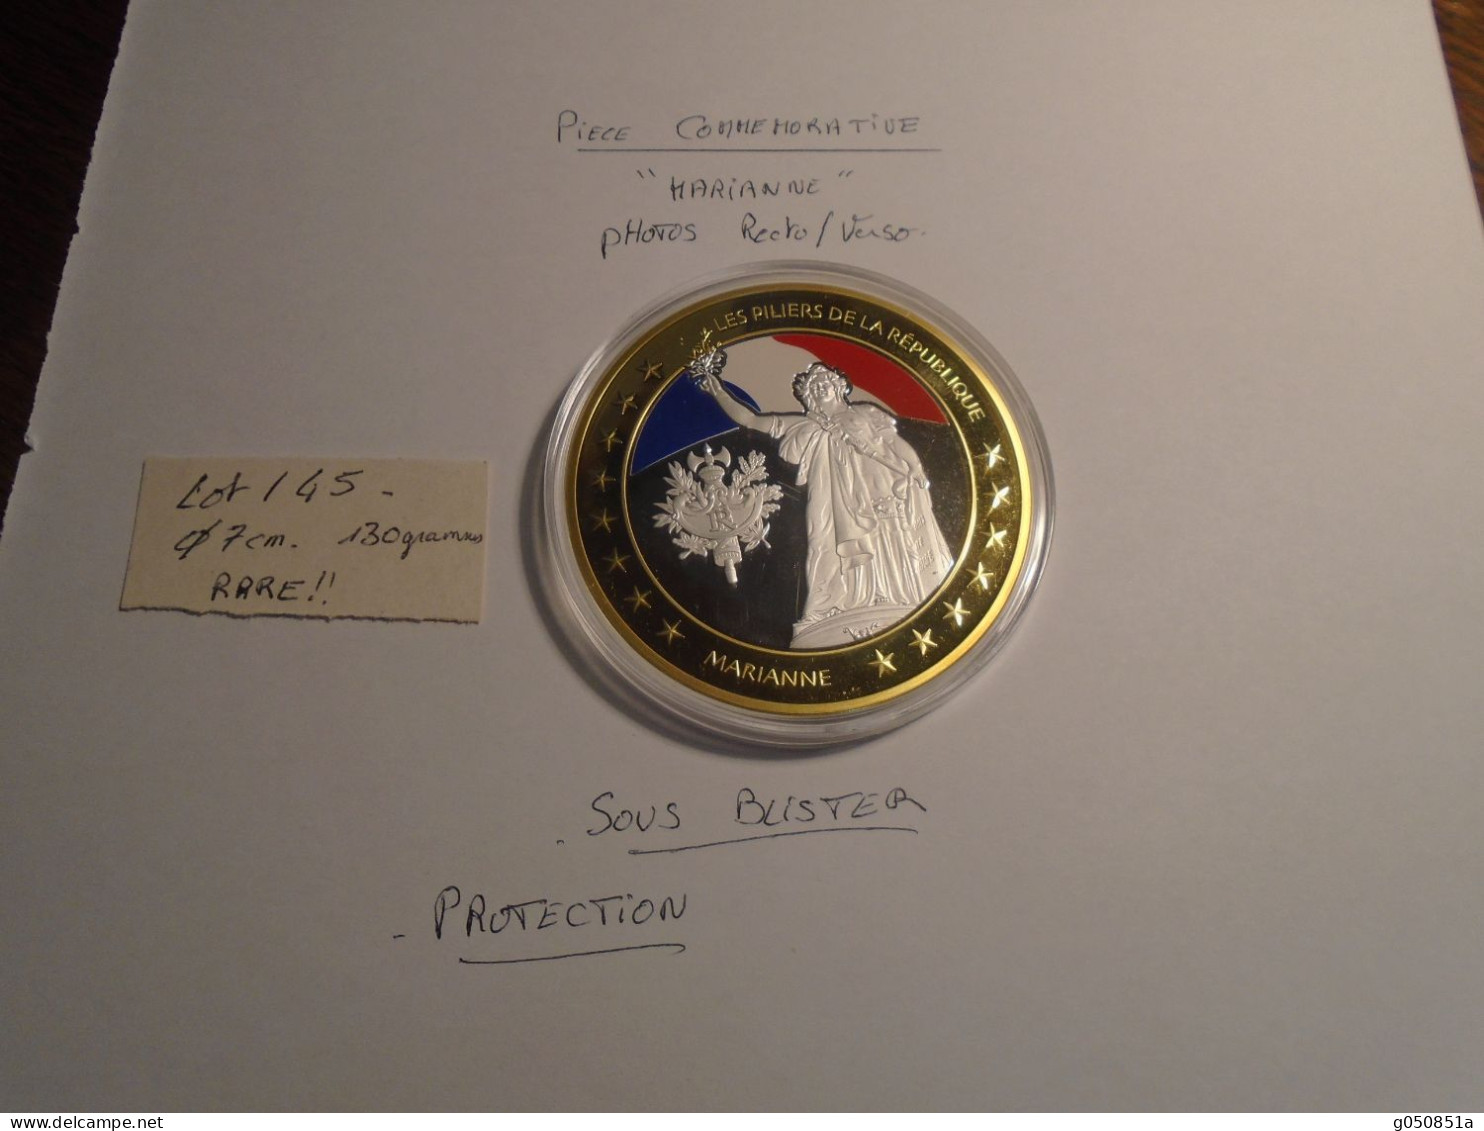 Medaille COMMEMORATIVE **LA MARSEILLAISE ** Diametre 7 cm ++ 130 grammes   SUPERBE neuve dans sa protection 9 photos